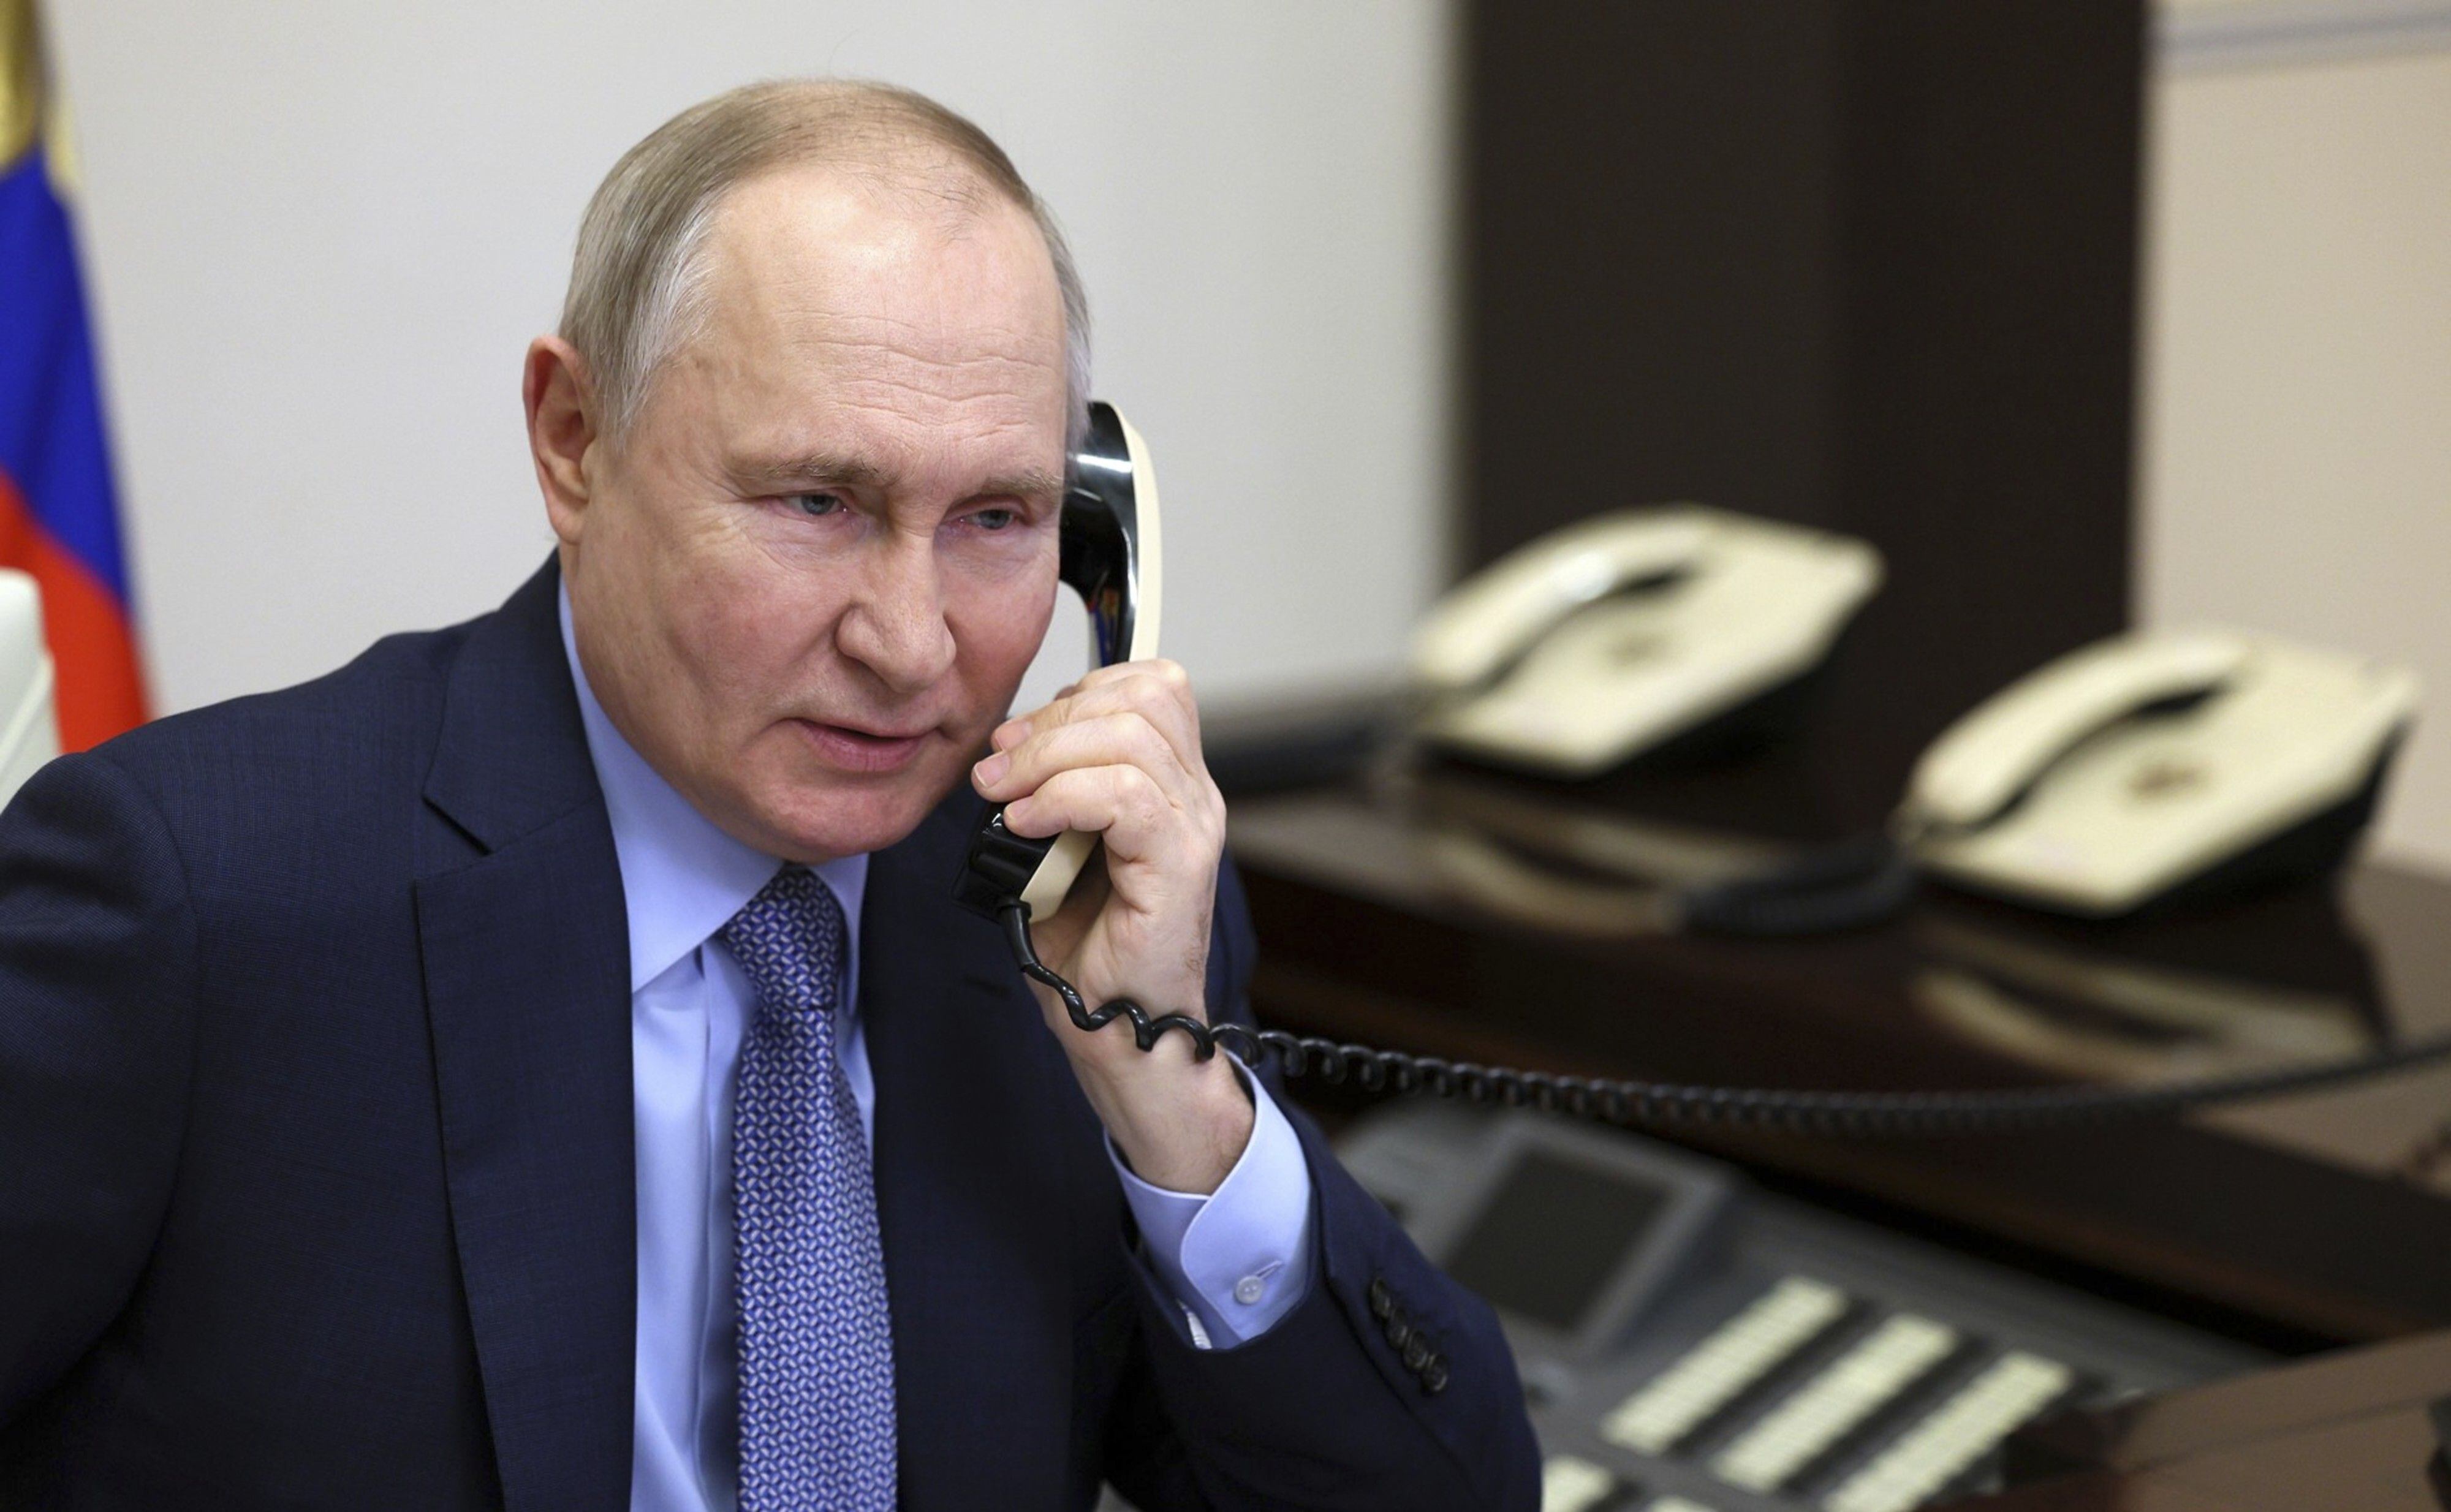 El presidente ruso, Vladimir Putin, ha expresado su intención de negociar un intercambio de prisioneros y ya cuenta con tres ciudadanos norteamericanos detenidos (EUROPA PRESS)